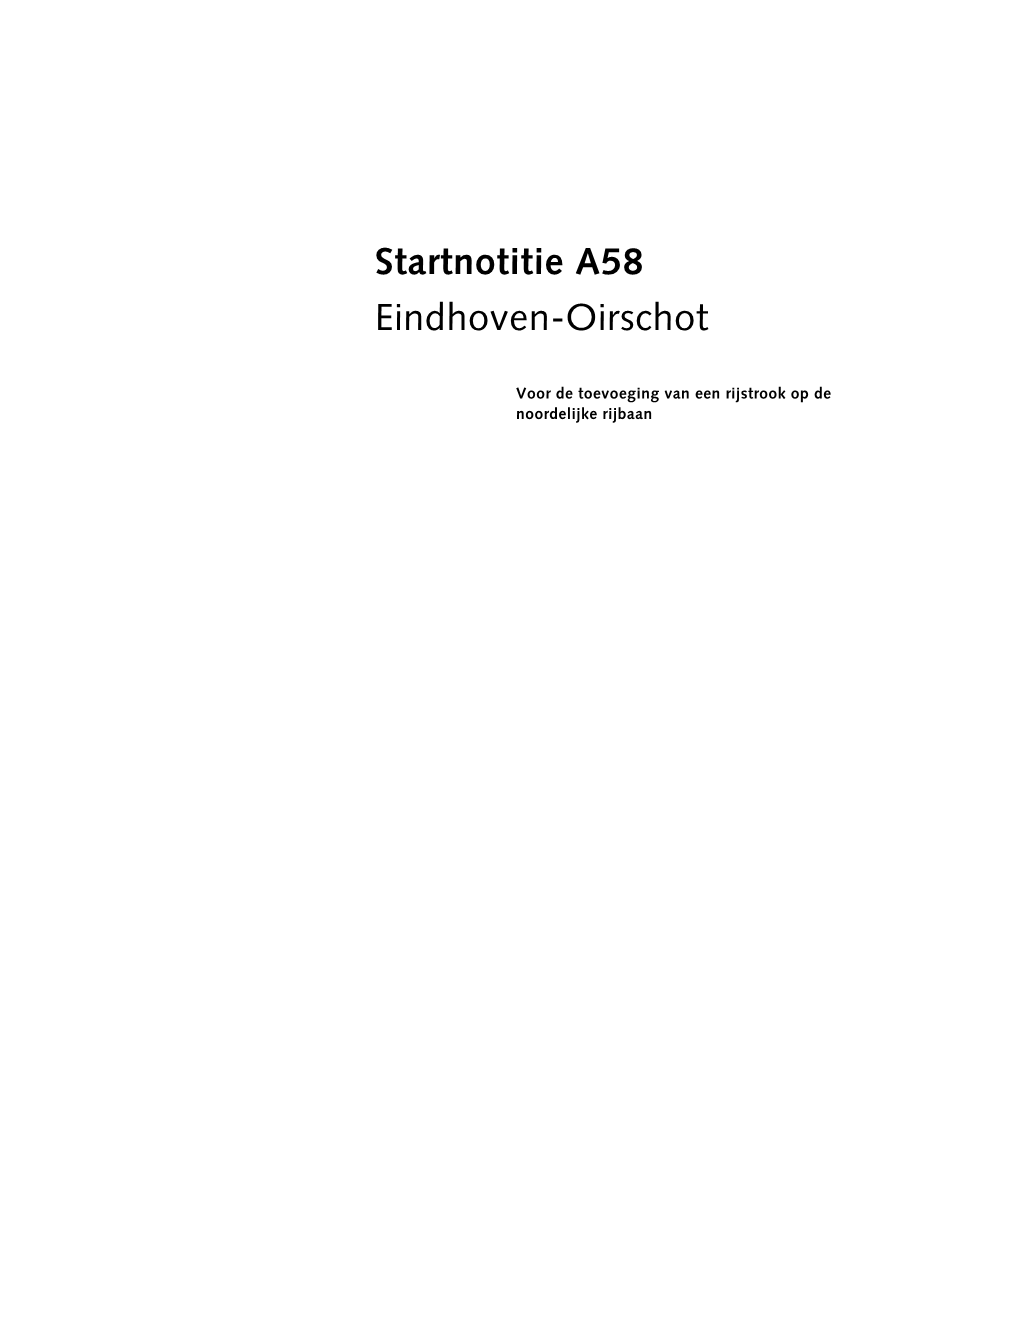 Startnotitie A58 Eindhoven-Oirschot